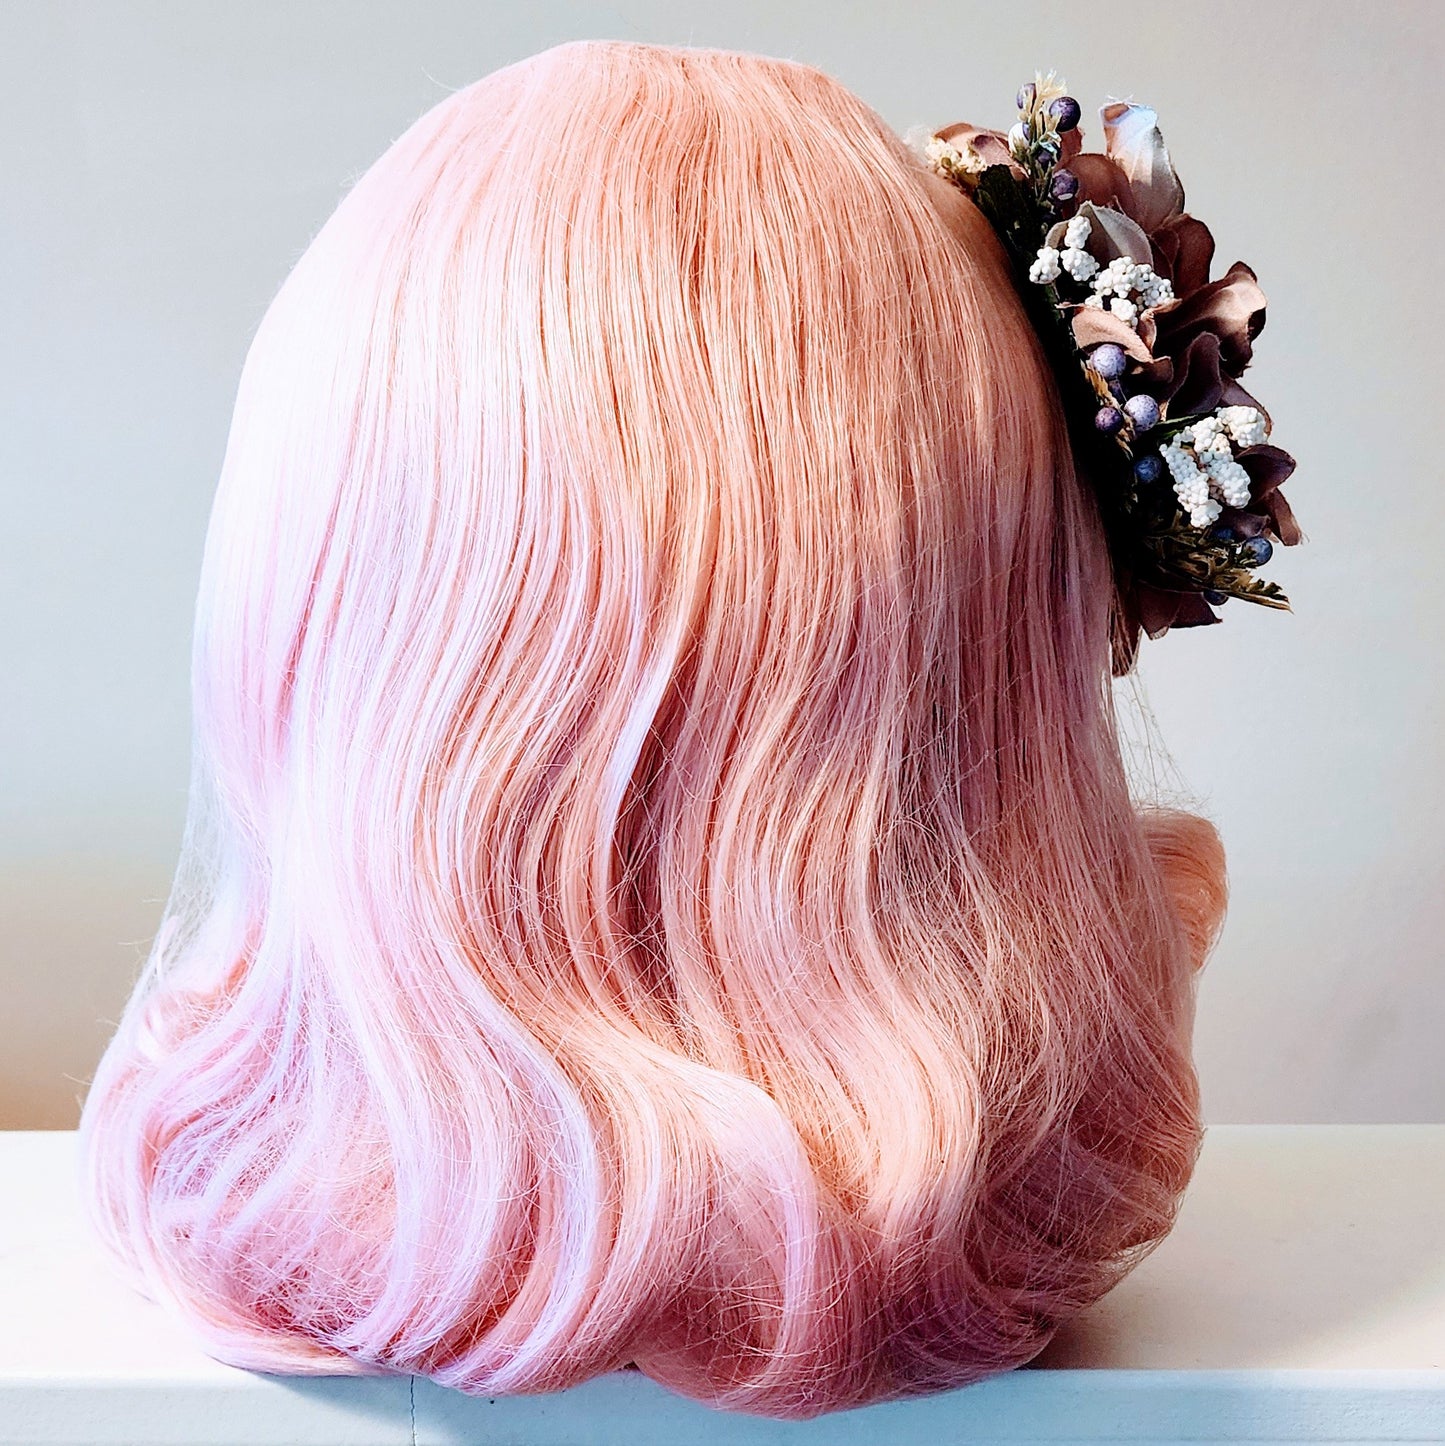 Mauve Dahlia Hair Flower Clip by Hollyville